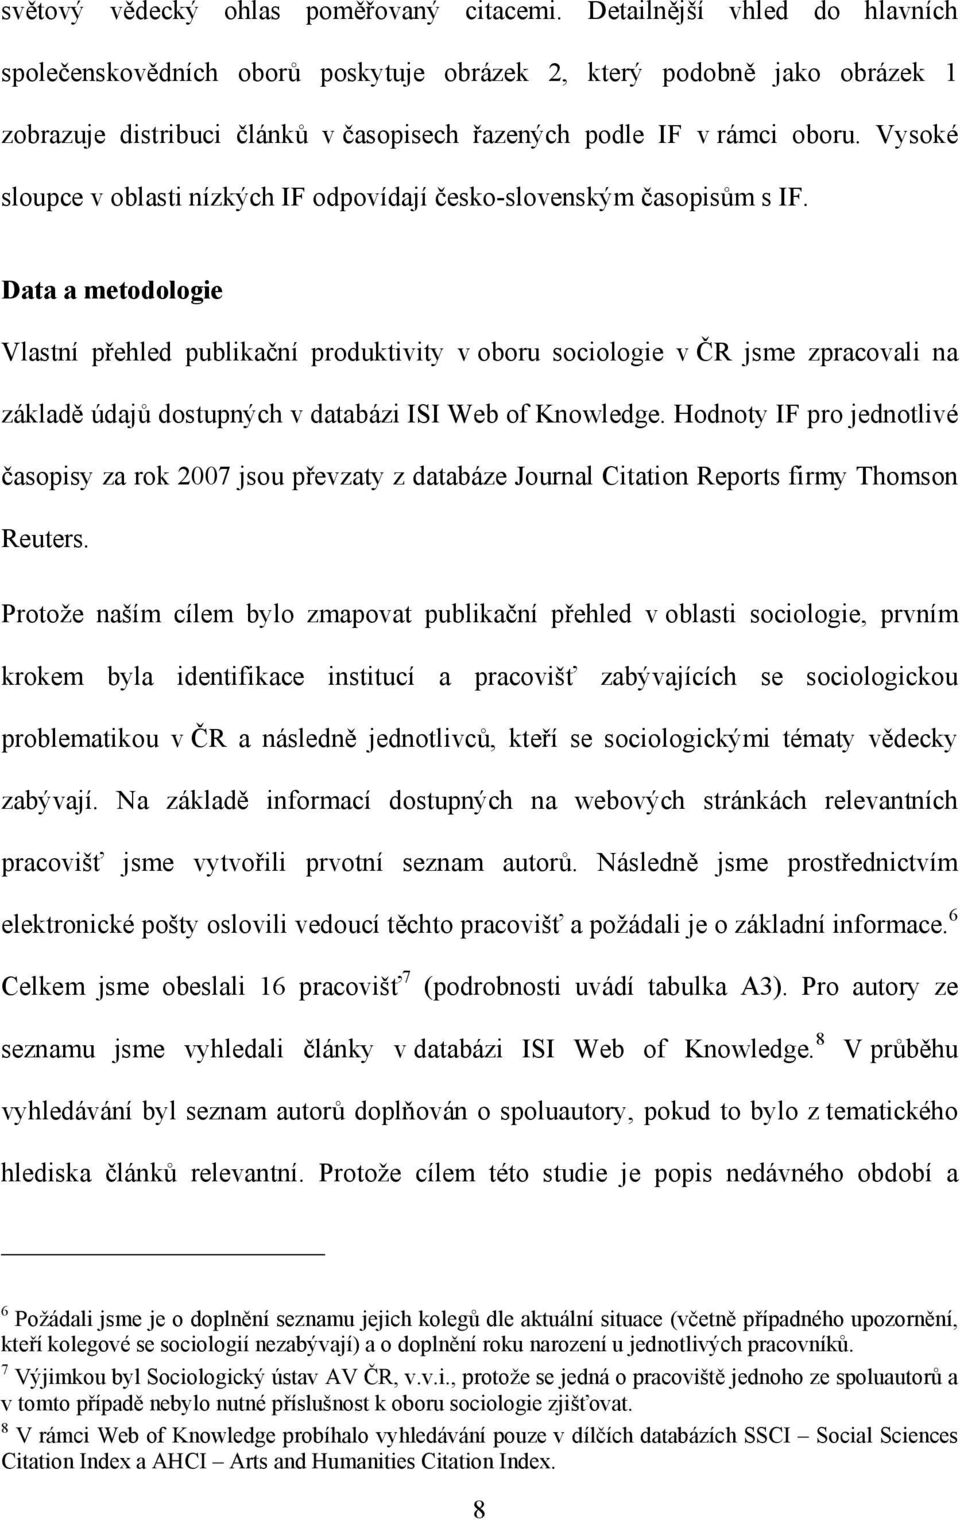 Vysoké sloupce v oblasti nízkých IF odpovídají česko-slovenským časopisům s IF.